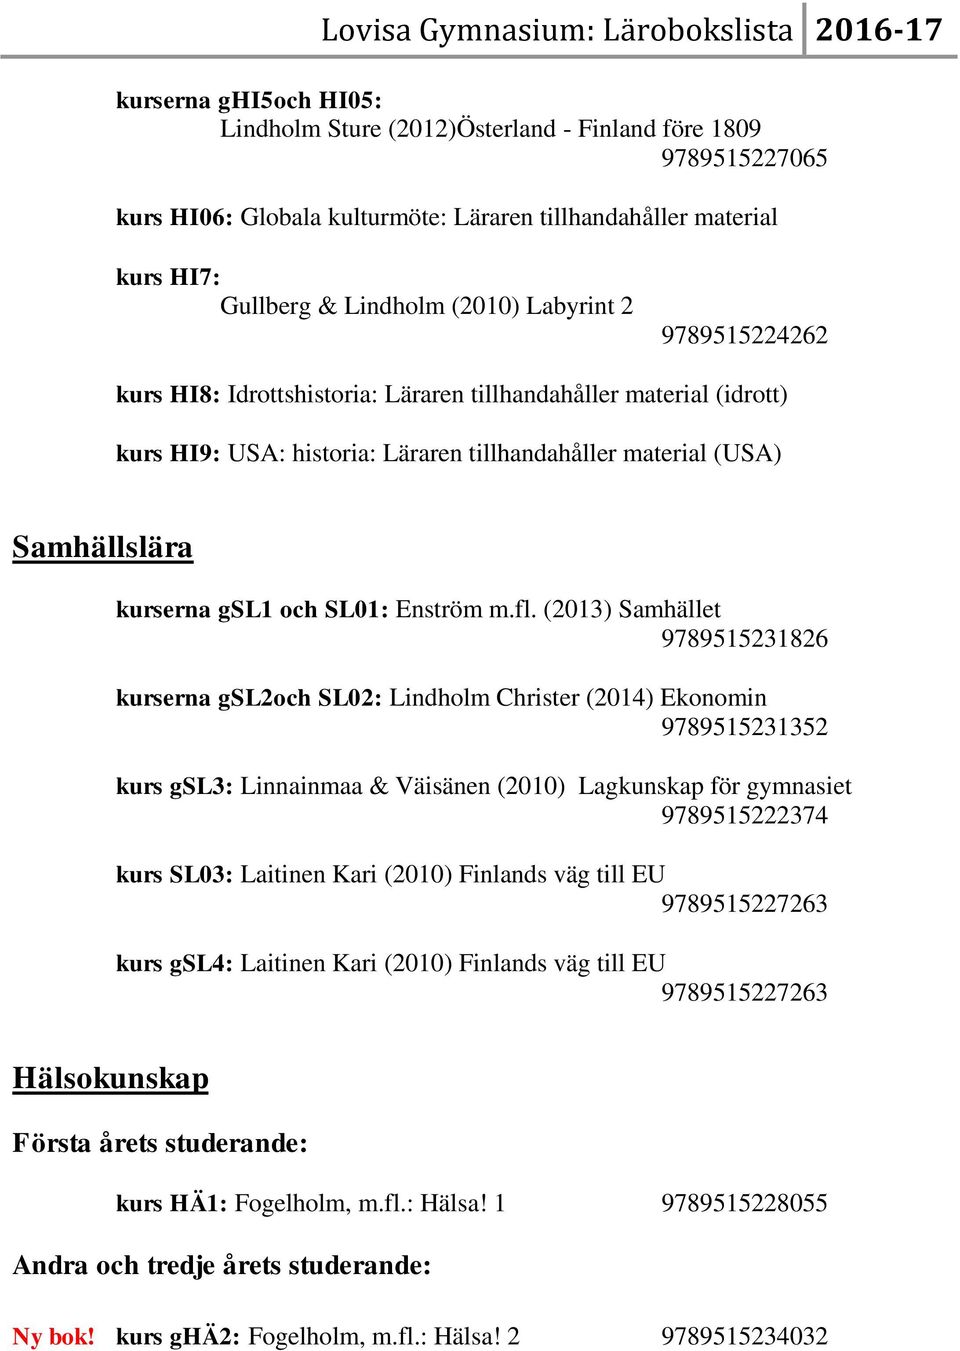 (2013) Samhället 9789515231826 kurserna gsl2och SL02: Lindholm Christer (2014) Ekonomin 9789515231352 kurs gsl3: Linnainmaa & Väisänen (2010) Lagkunskap för gymnasiet 9789515222374 kurs SL03: